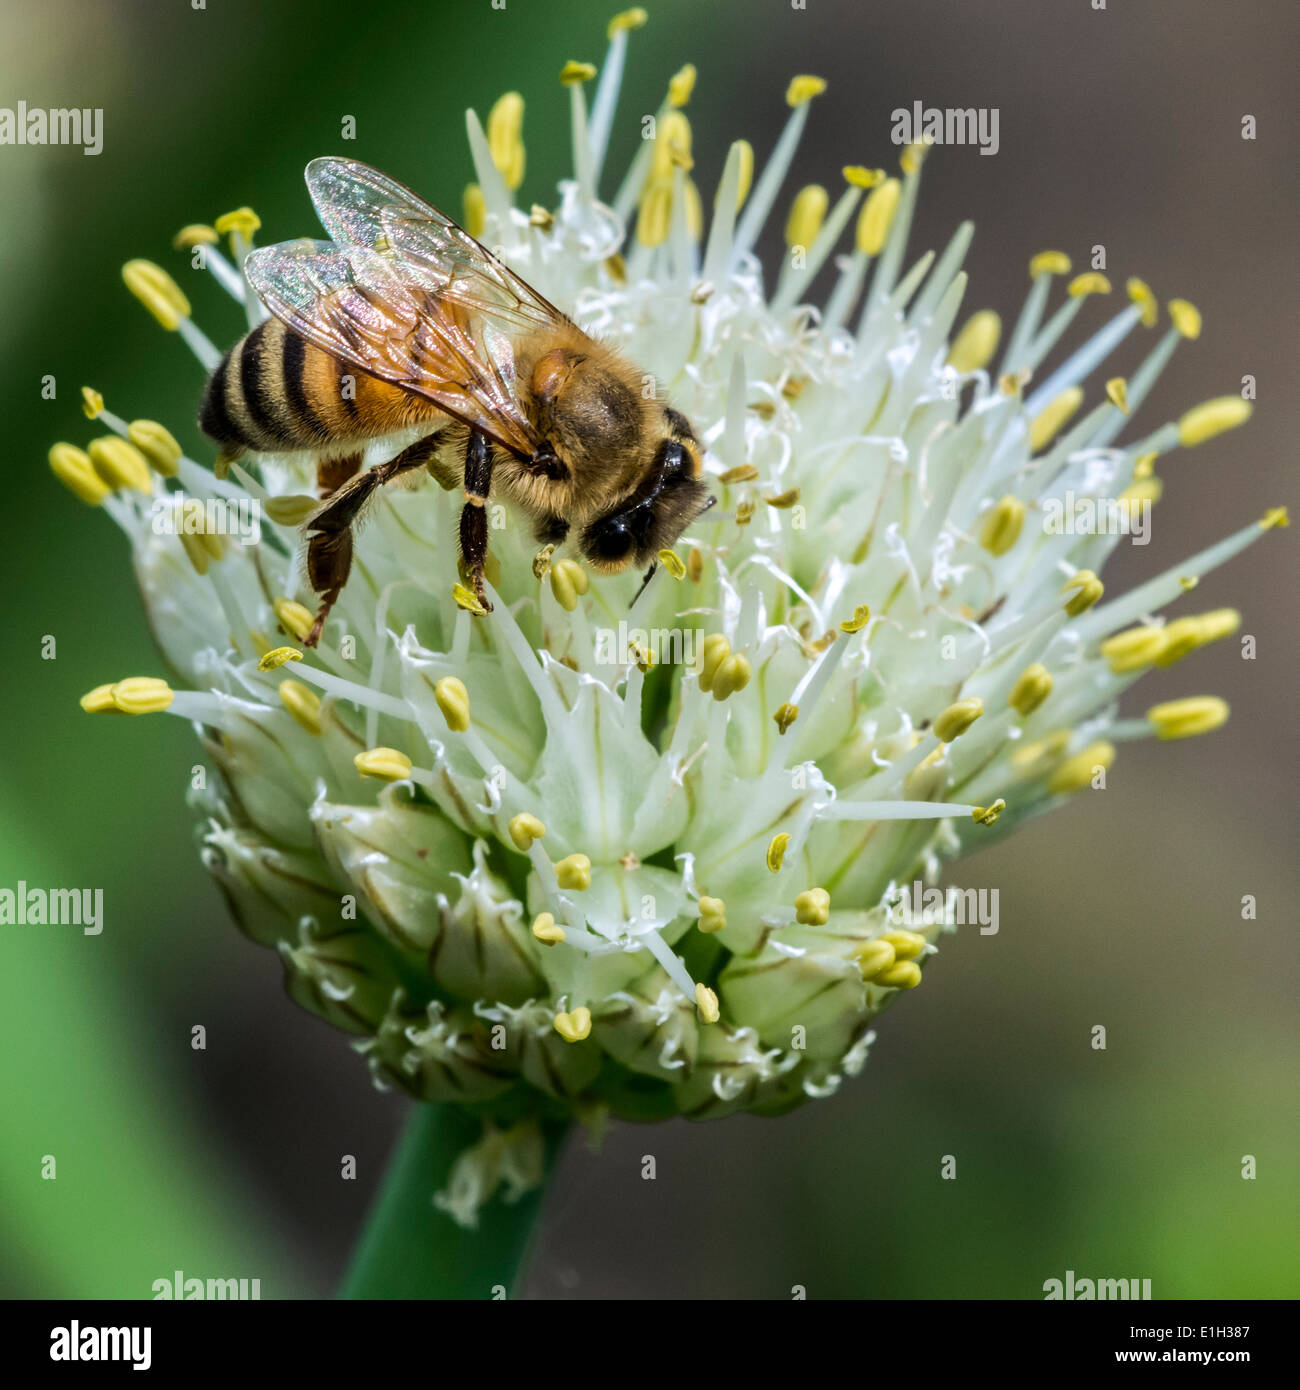 Western / miel de abeja la abeja europea (Apis mellifera), recogiendo el néctar de la flor Foto de stock